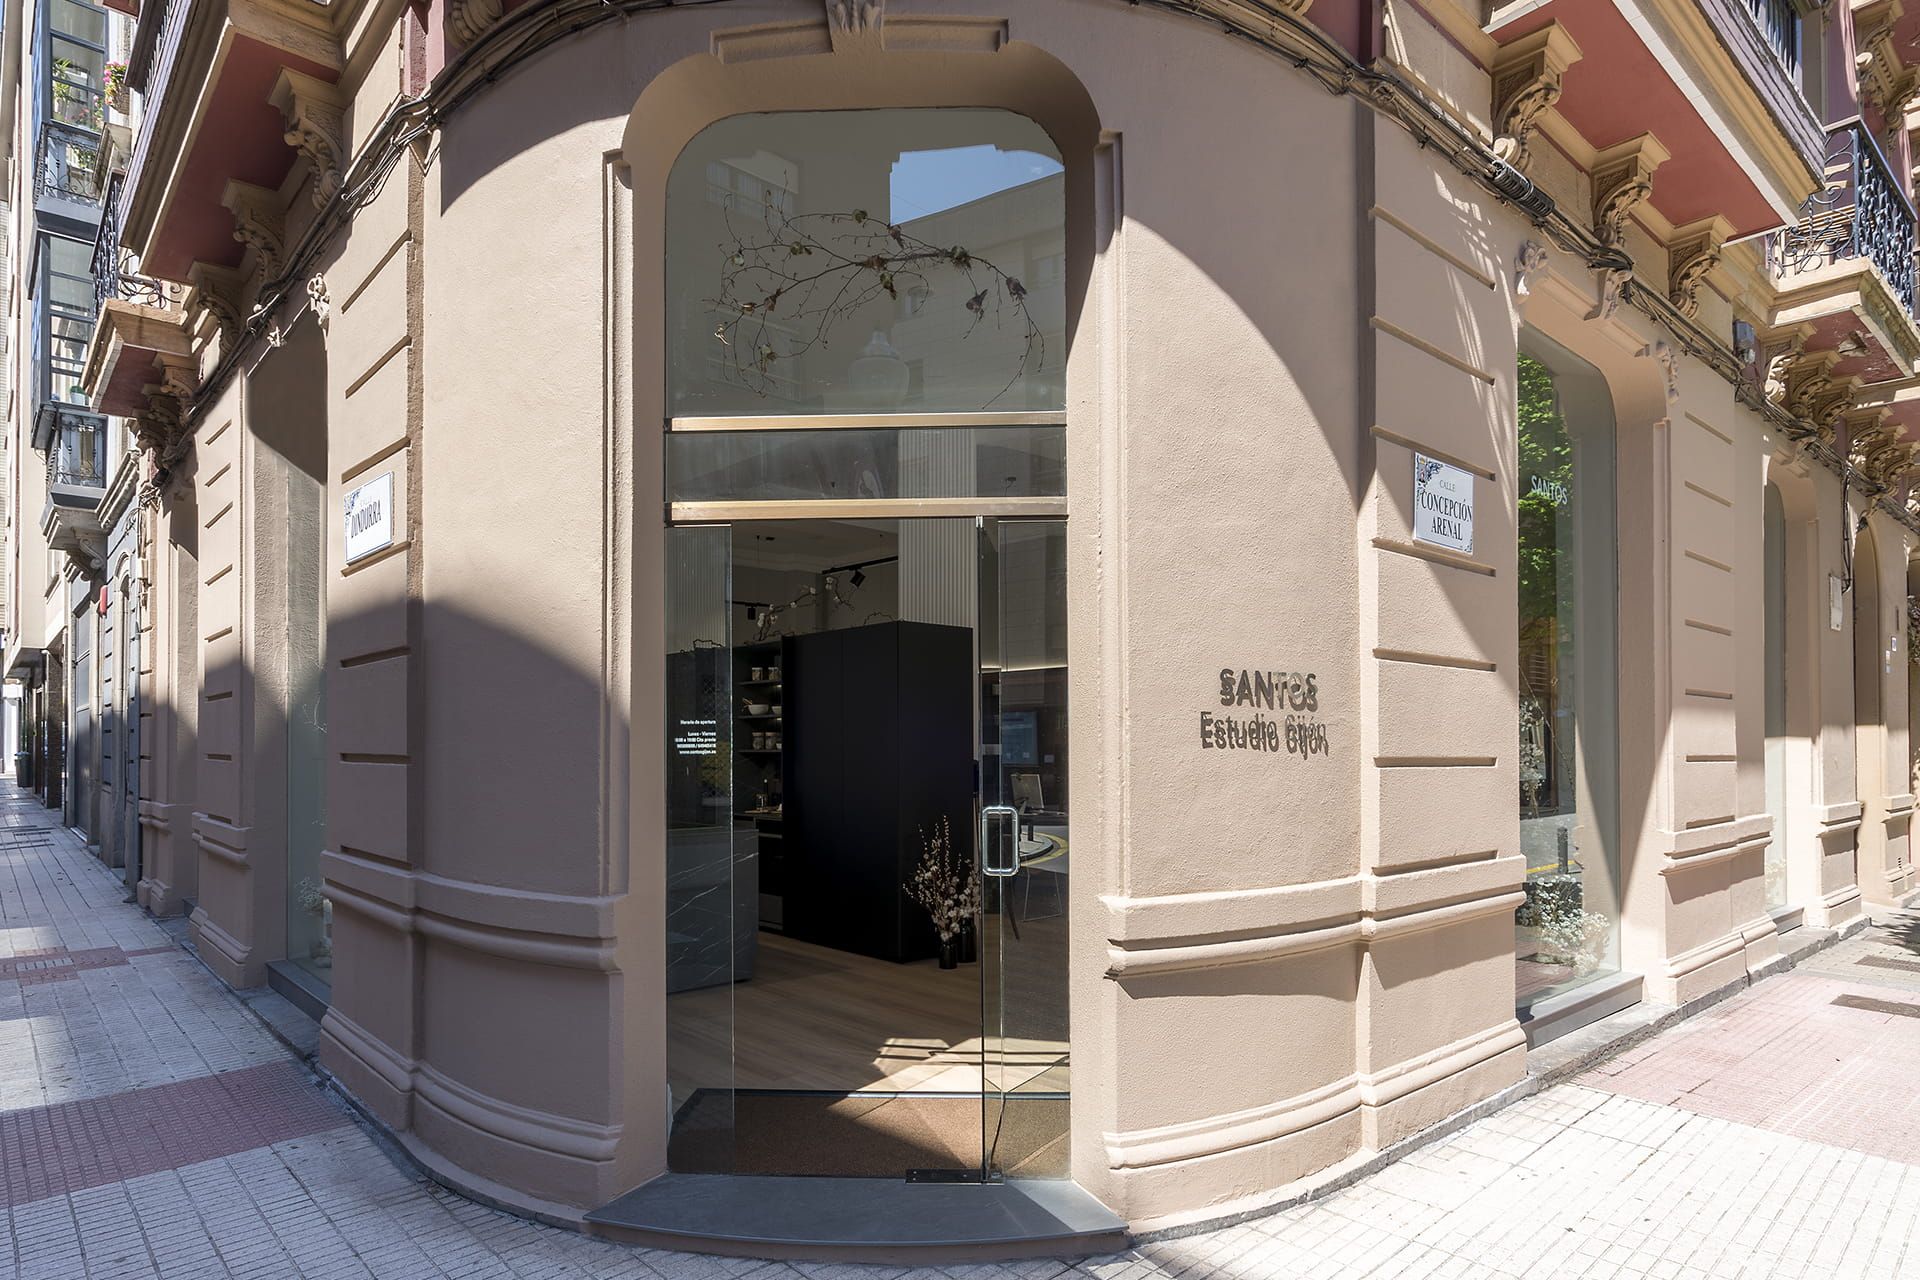 Entrada da nova loja da Santos Estudio em Gijón